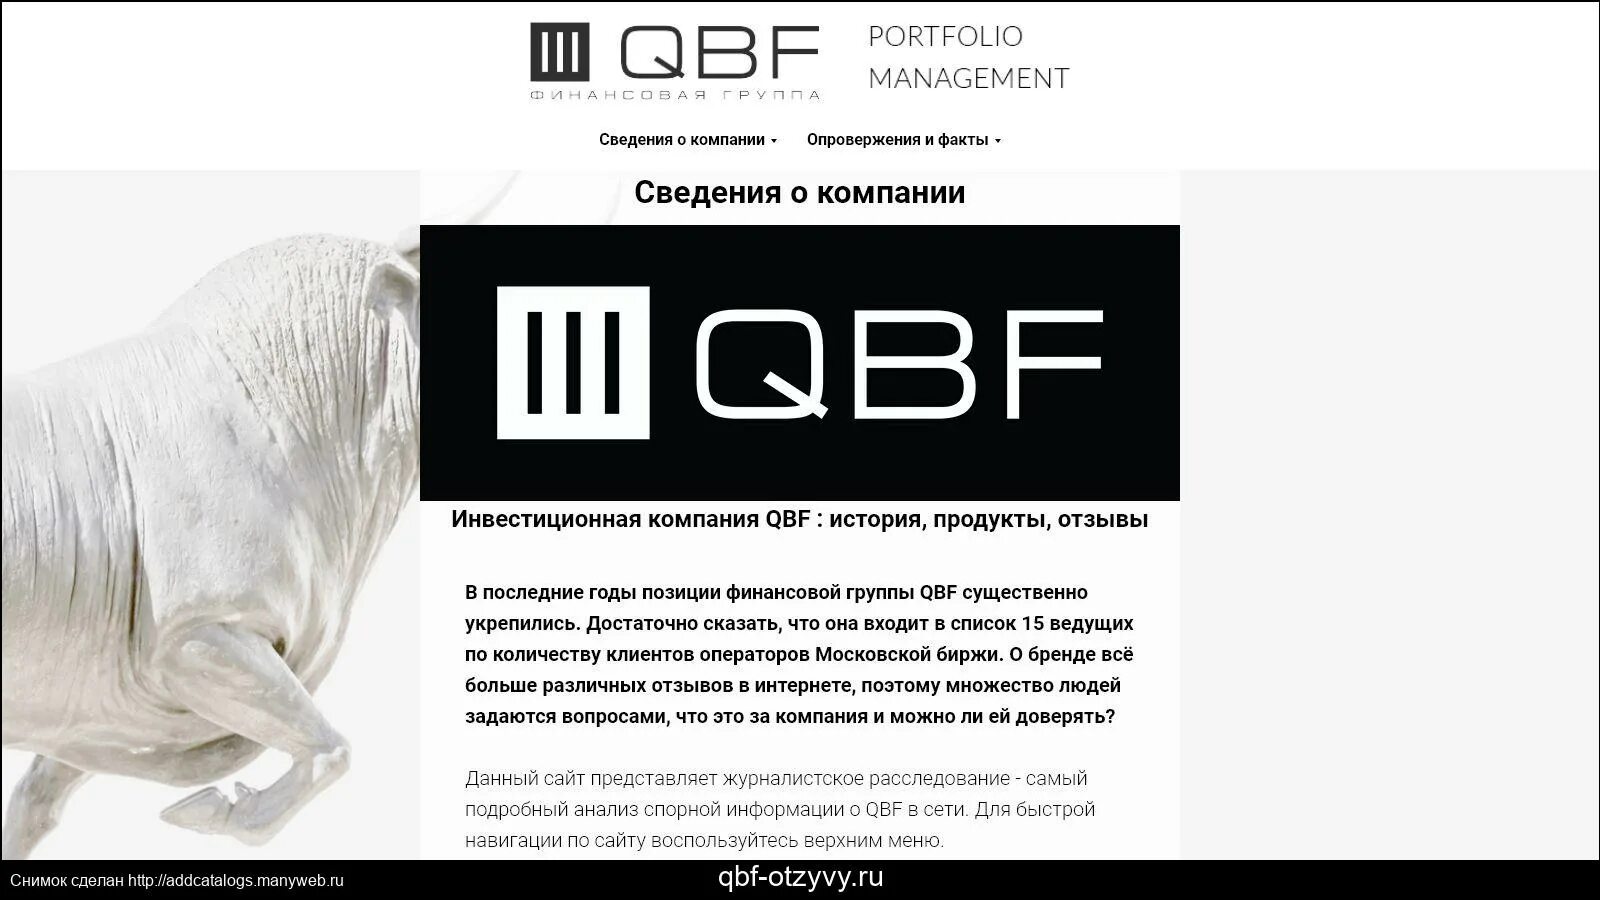 Компания QBF. Финансовая группа QBF. ИК КЬЮБИЭФ. QBF лого. Essti ru отзывы